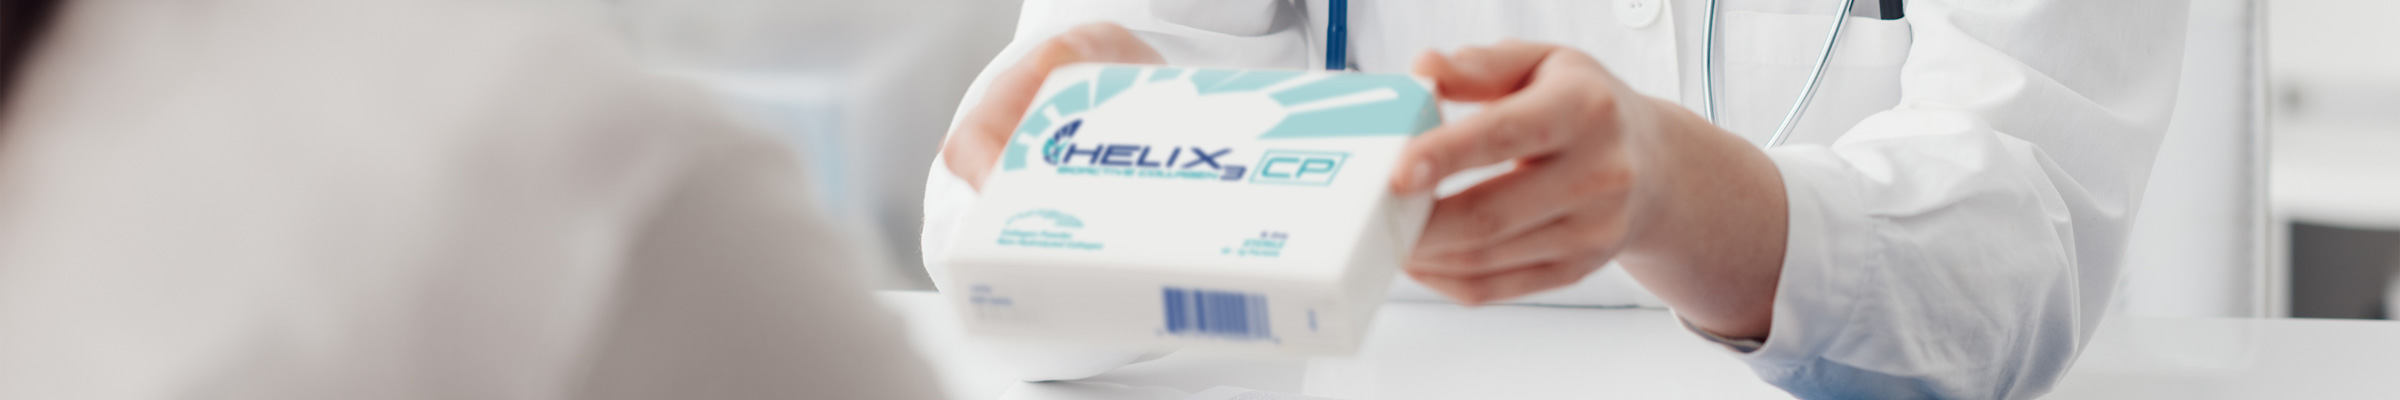 Doctor handing box of HELIX3 collagen to patient